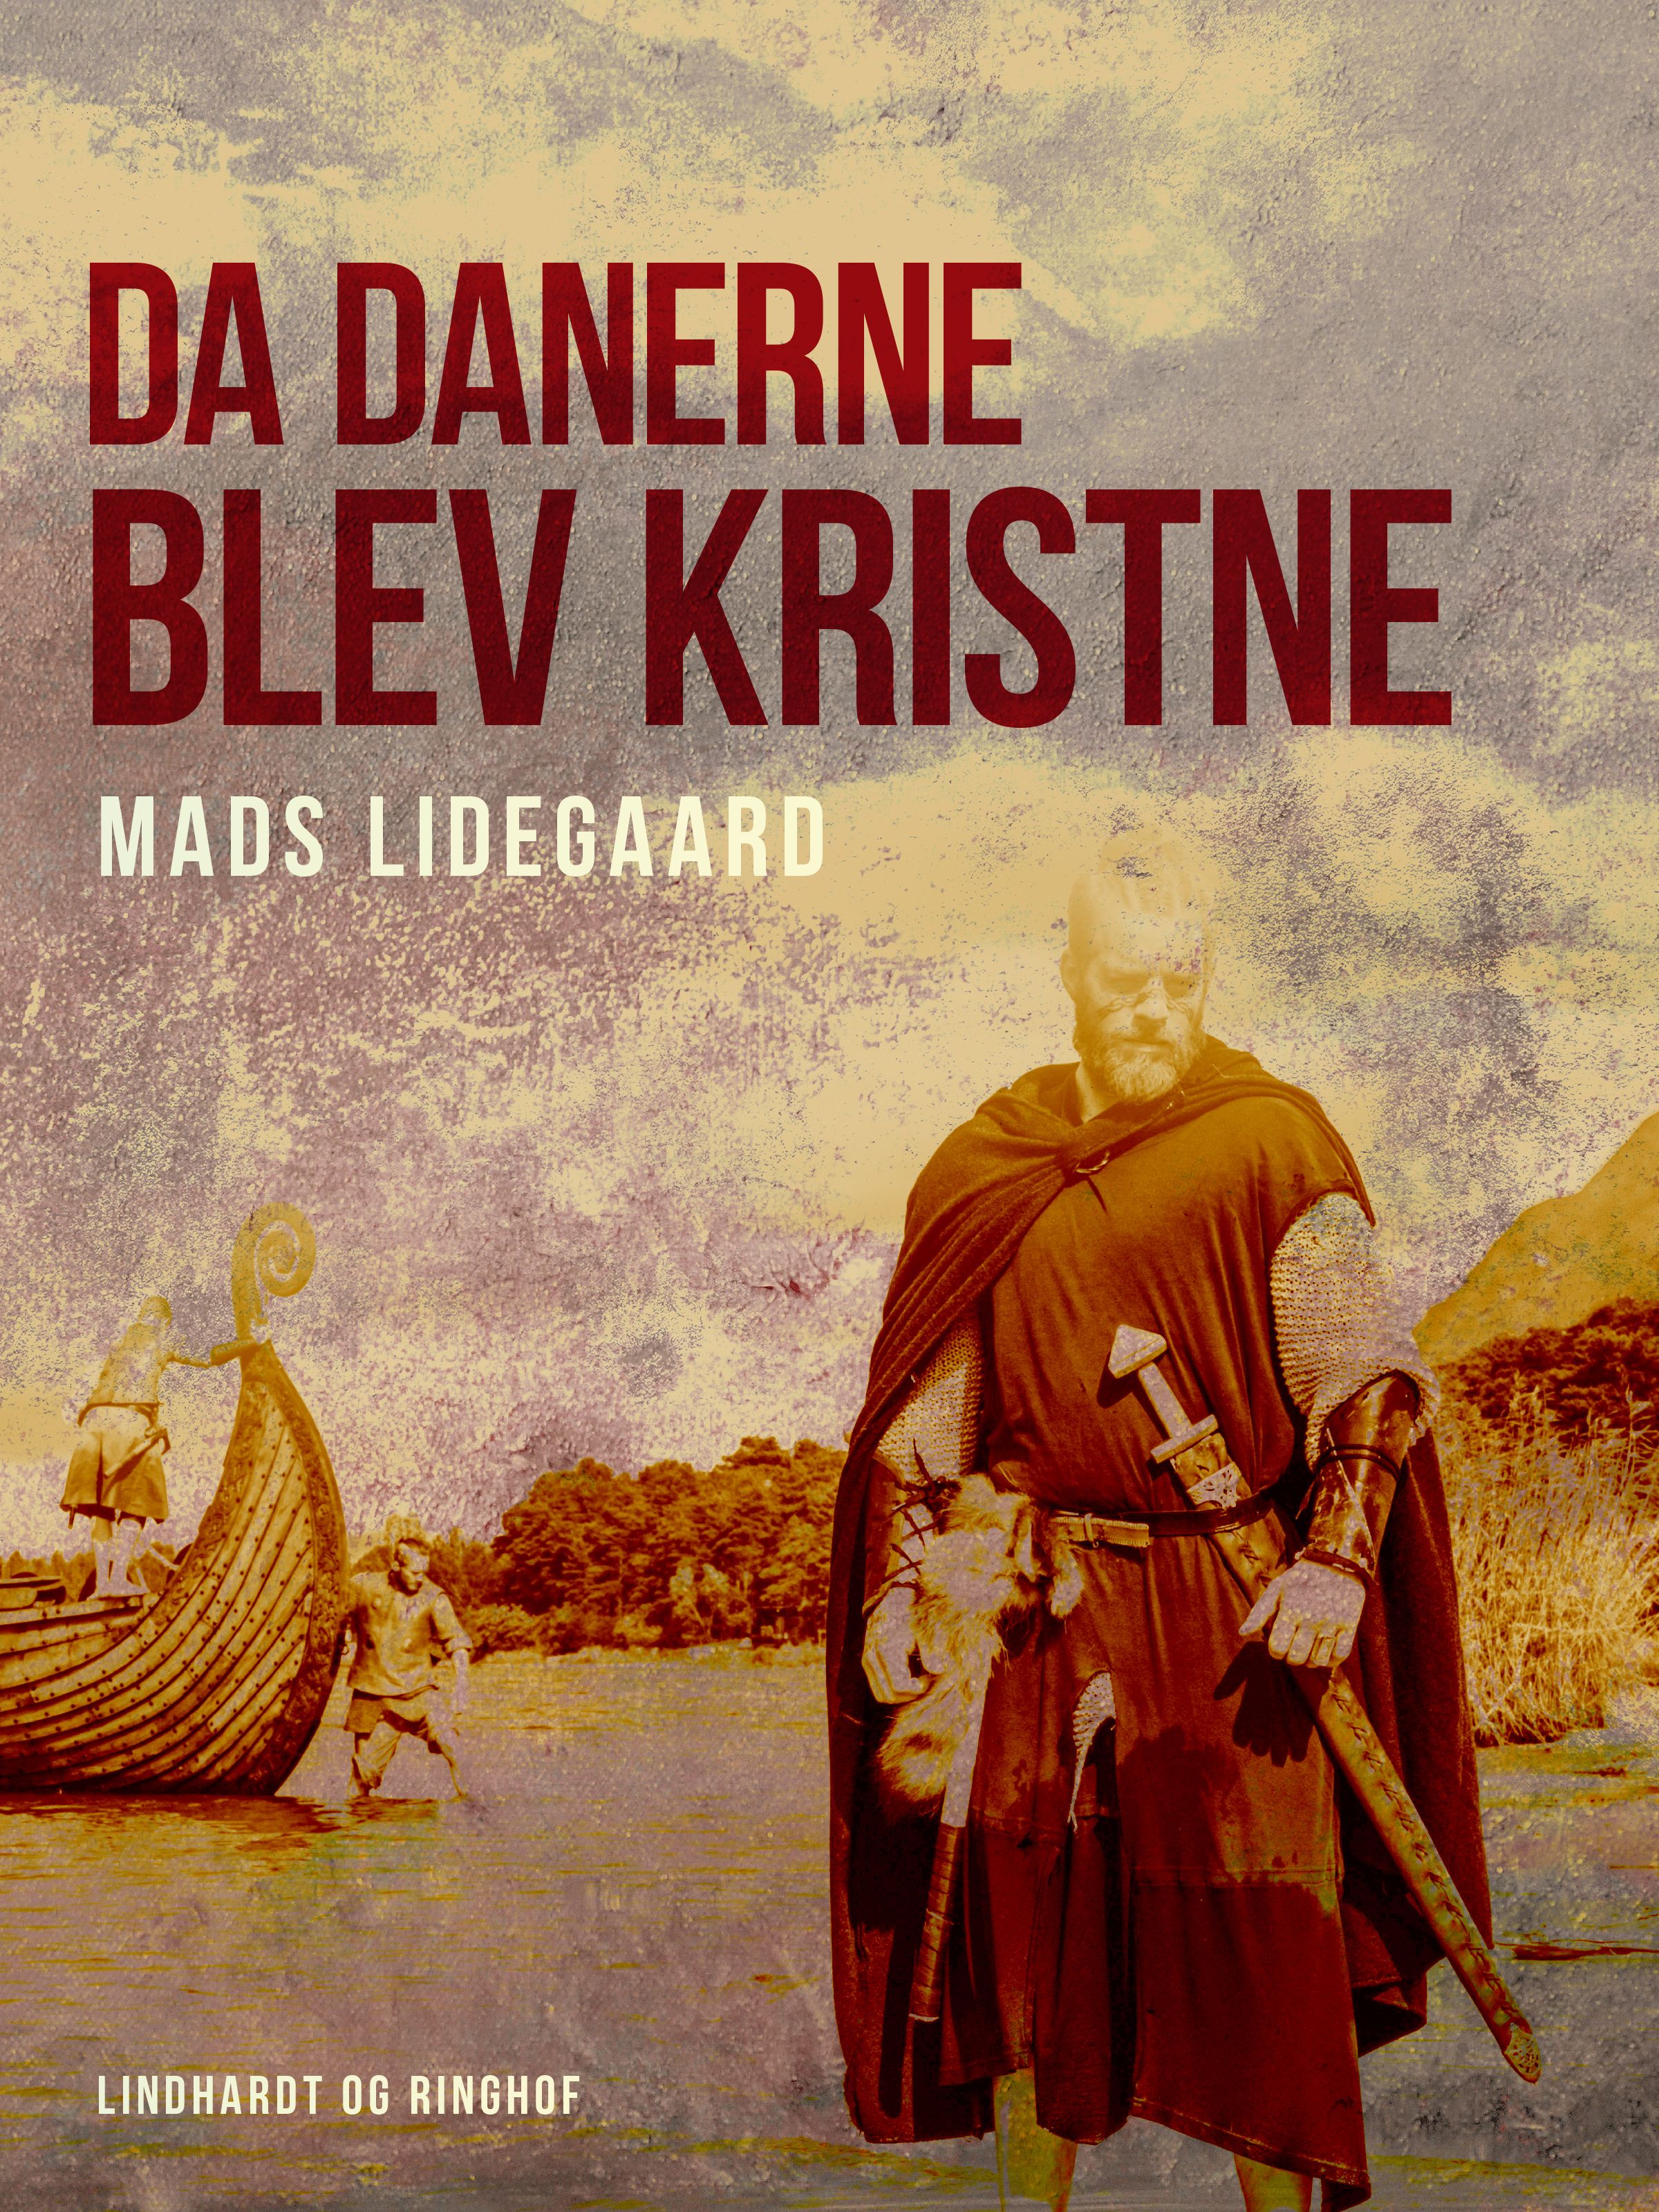 Da danerne blev kristne, e-bog af Mads Lidegaard